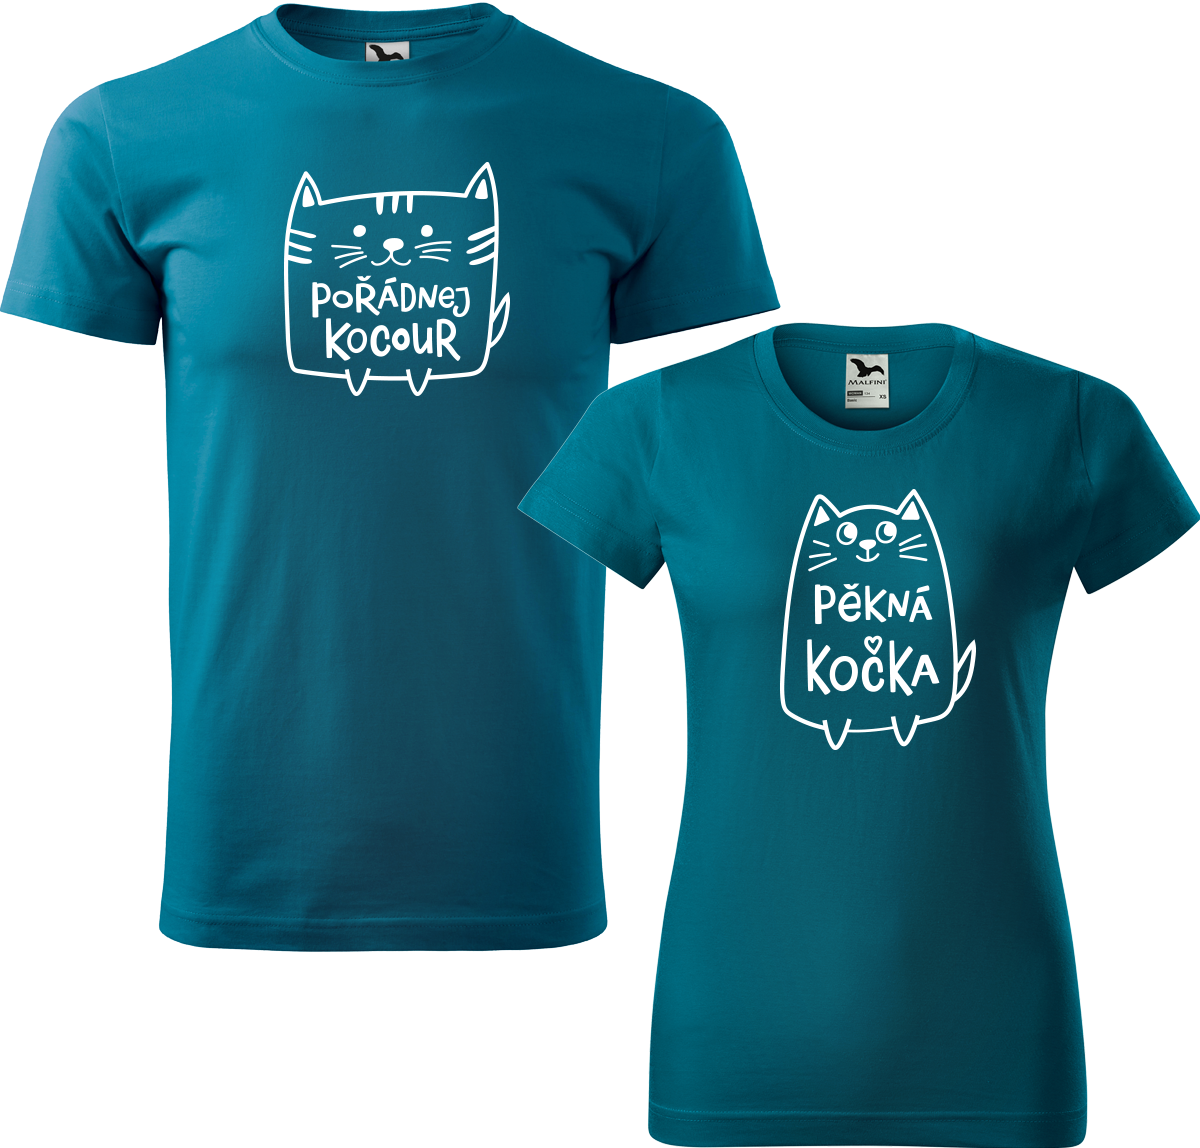 Trička pro páry - Pořádnej kocour a pěkná kočka Barva: Petrolejová (93), Velikost dámské tričko: M, Velikost pánské tričko: L